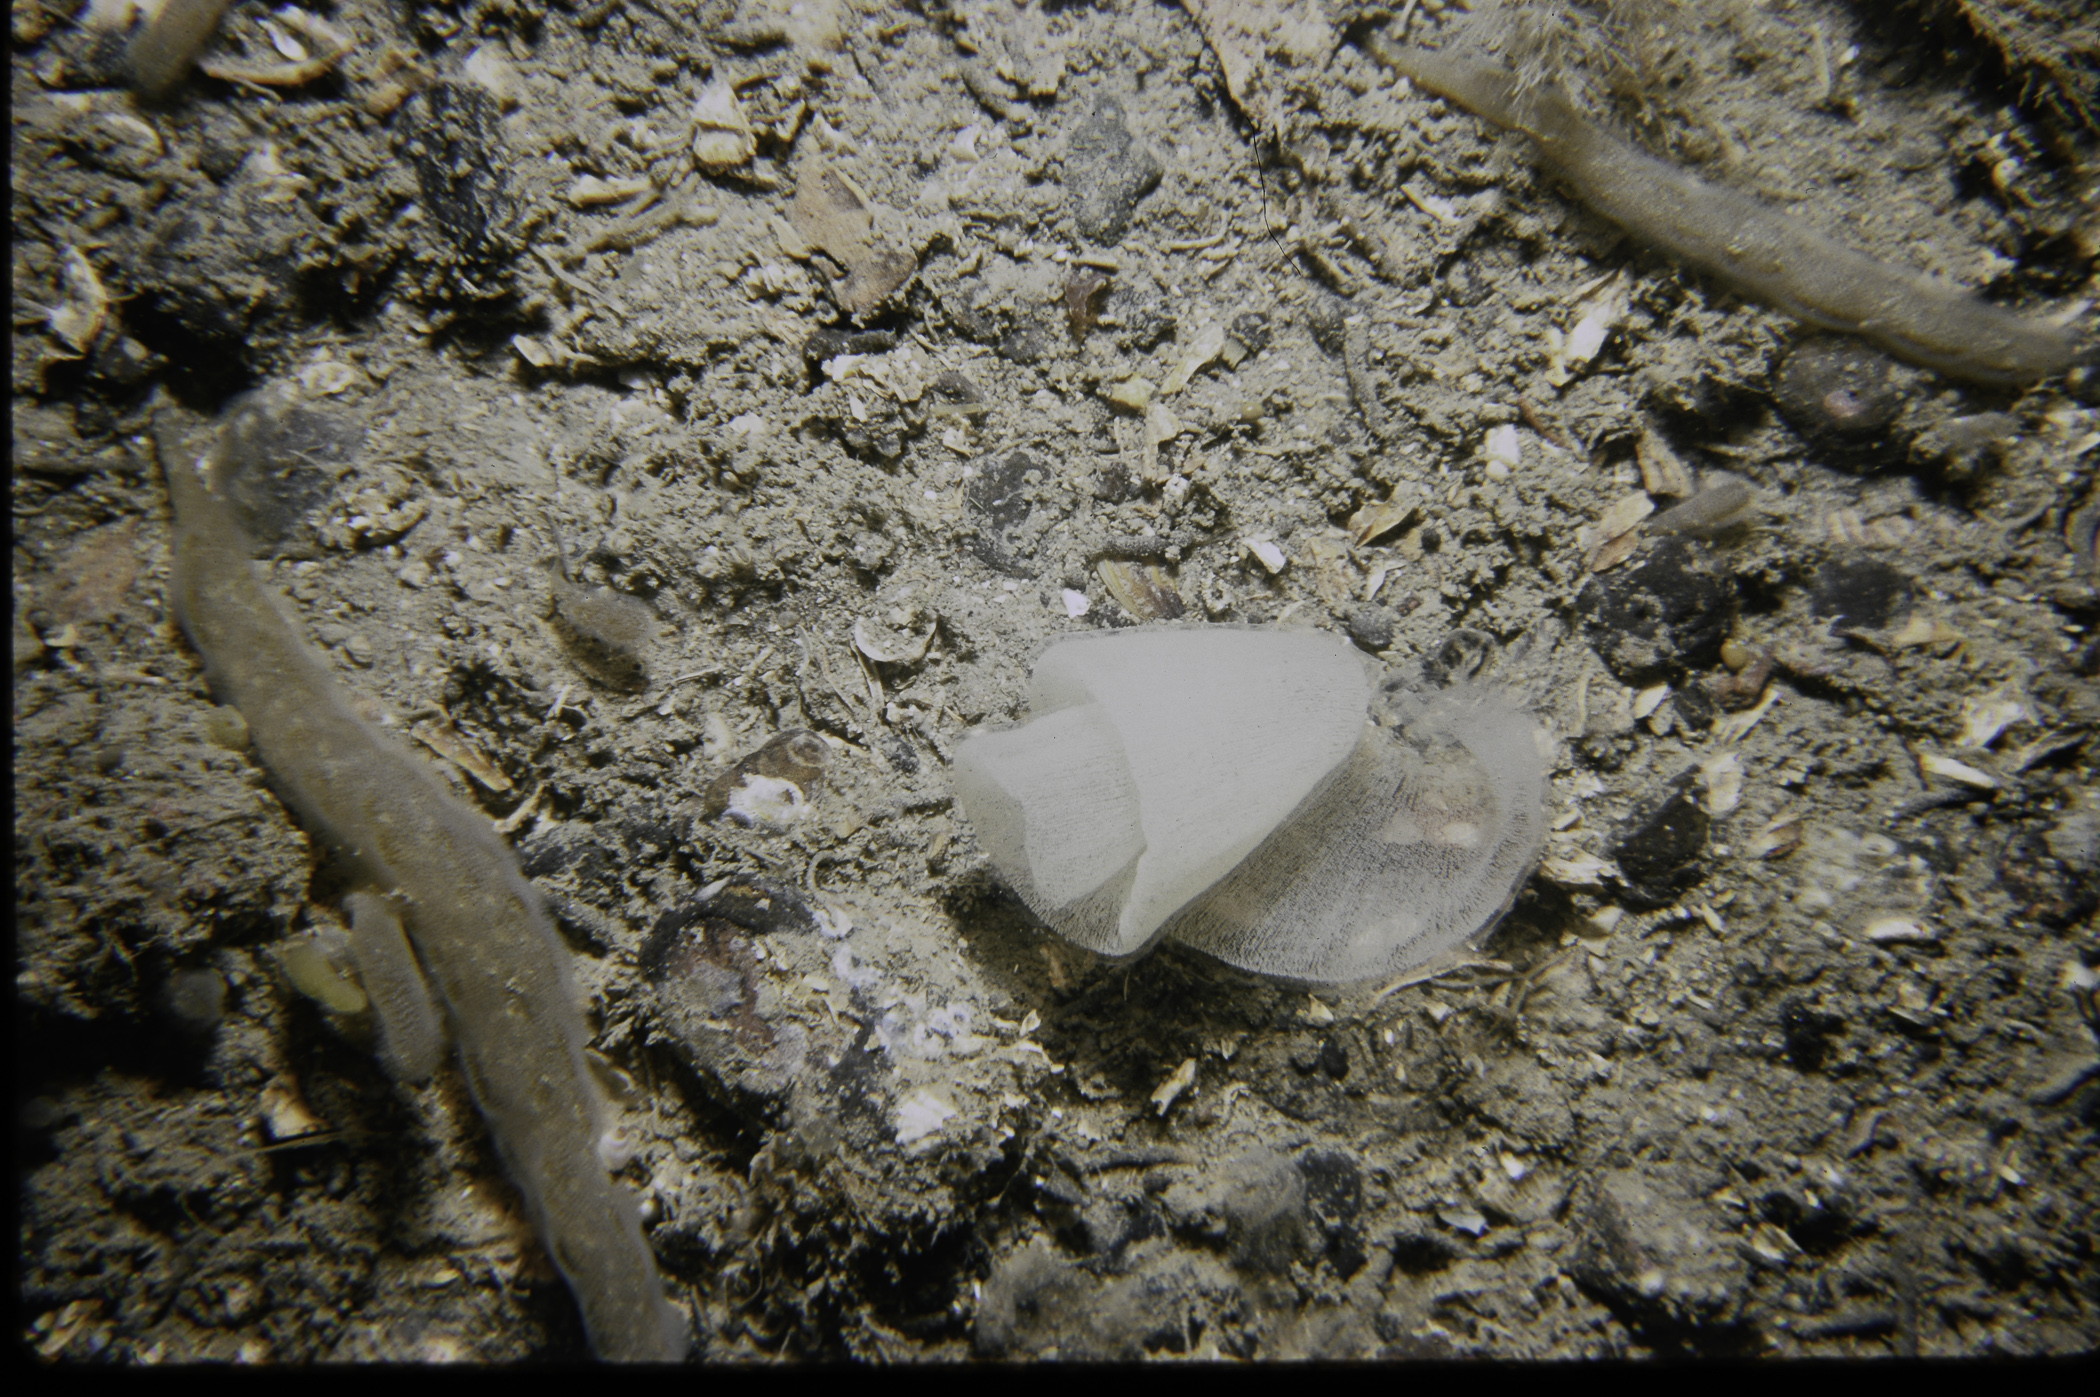 Alcyonidium diaphanum, Pleurobranchus membranaceus. Site: NE of White Cliffs, Port Muck. 